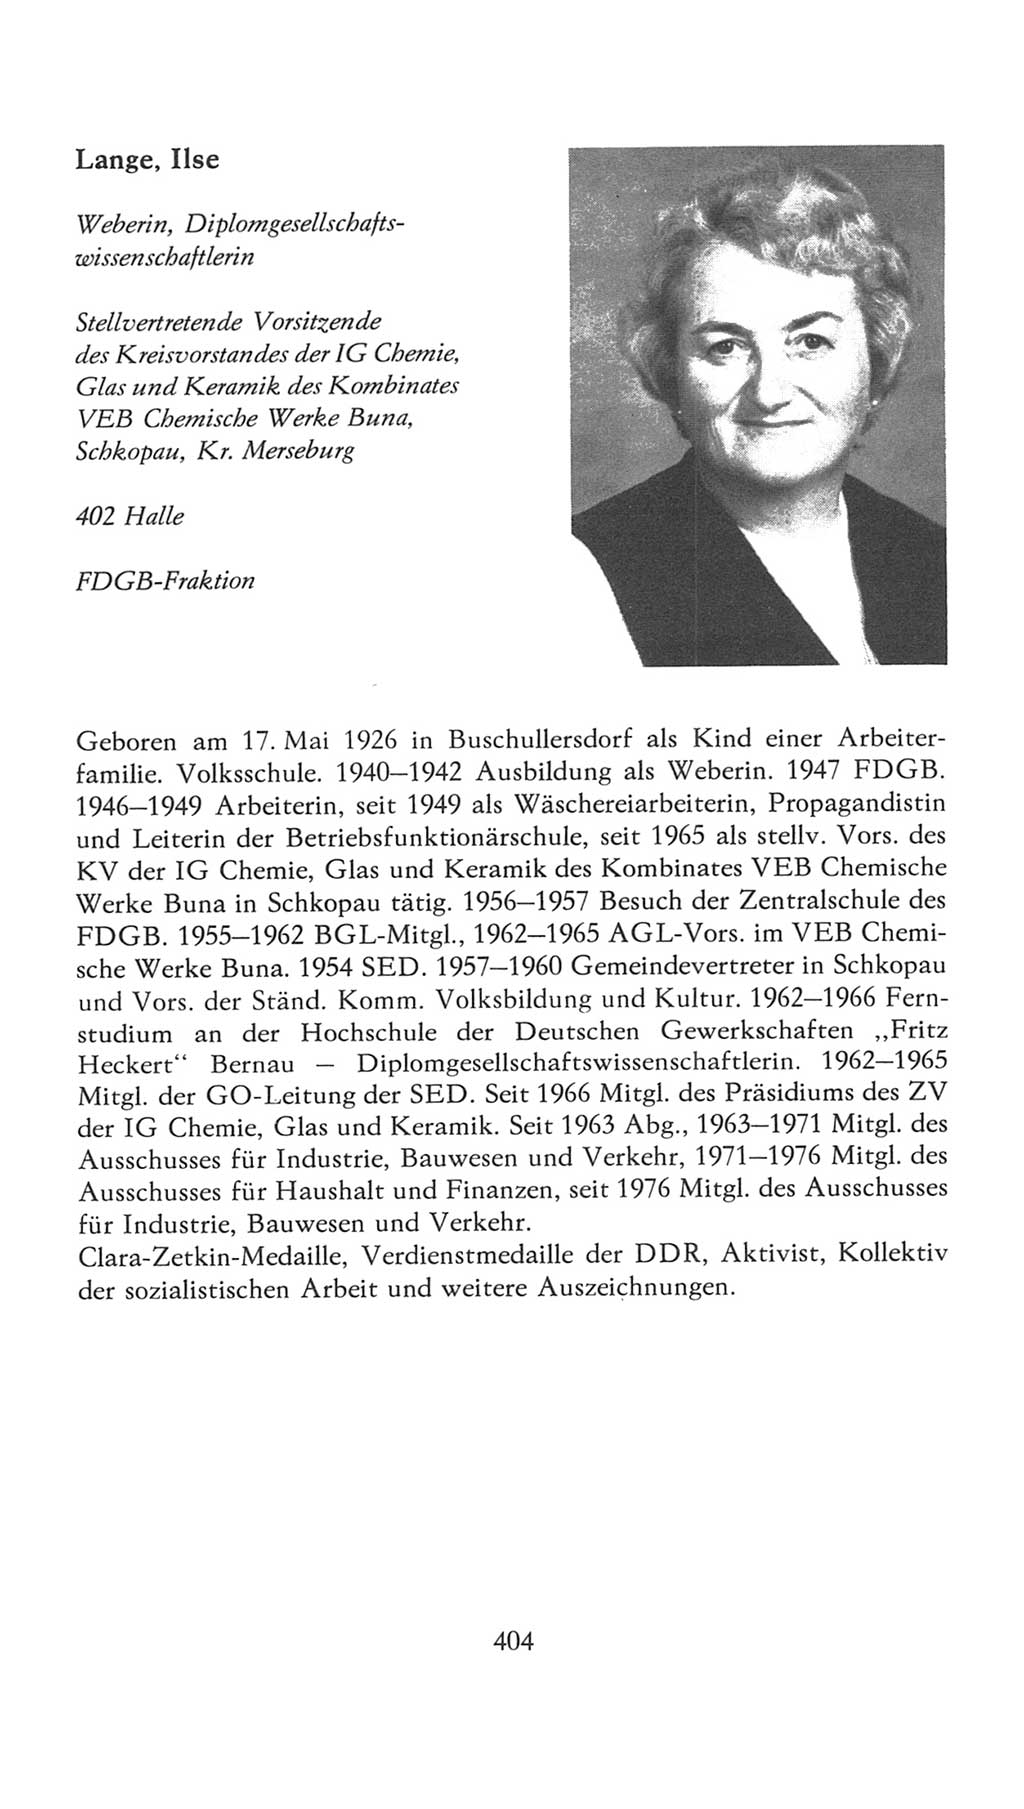 Volkskammer (VK) der Deutschen Demokratischen Republik (DDR), 7. Wahlperiode 1976-1981, Seite 404 (VK. DDR 7. WP. 1976-1981, S. 404)